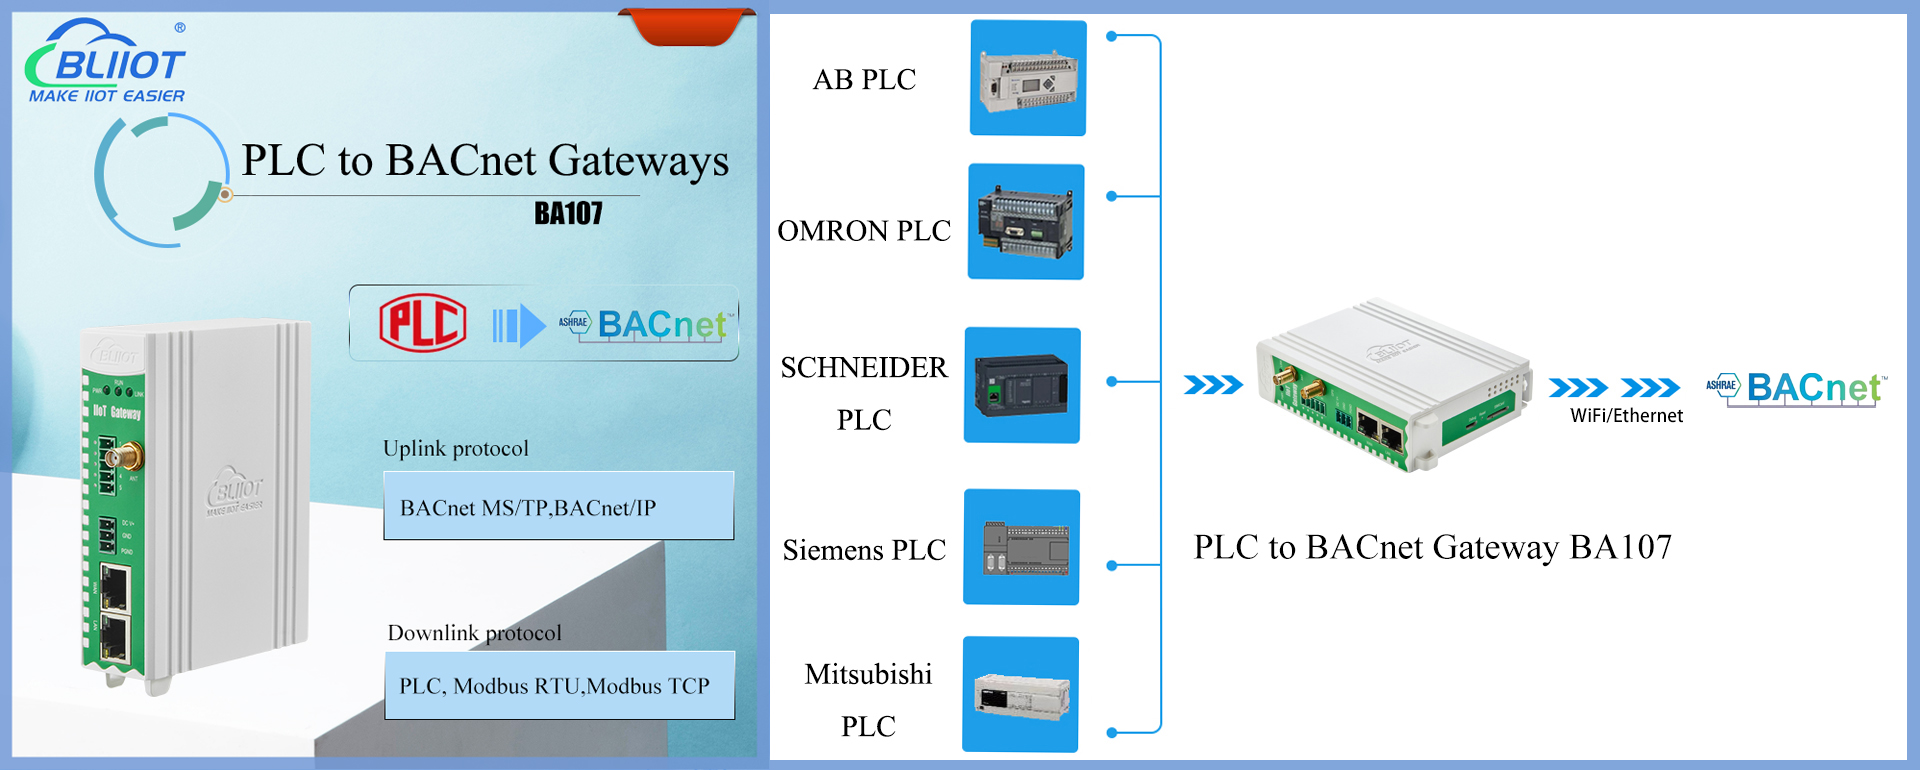 BLIIoT | BACnet Gateway BA107 Converts Multiple PLCs to BACnet